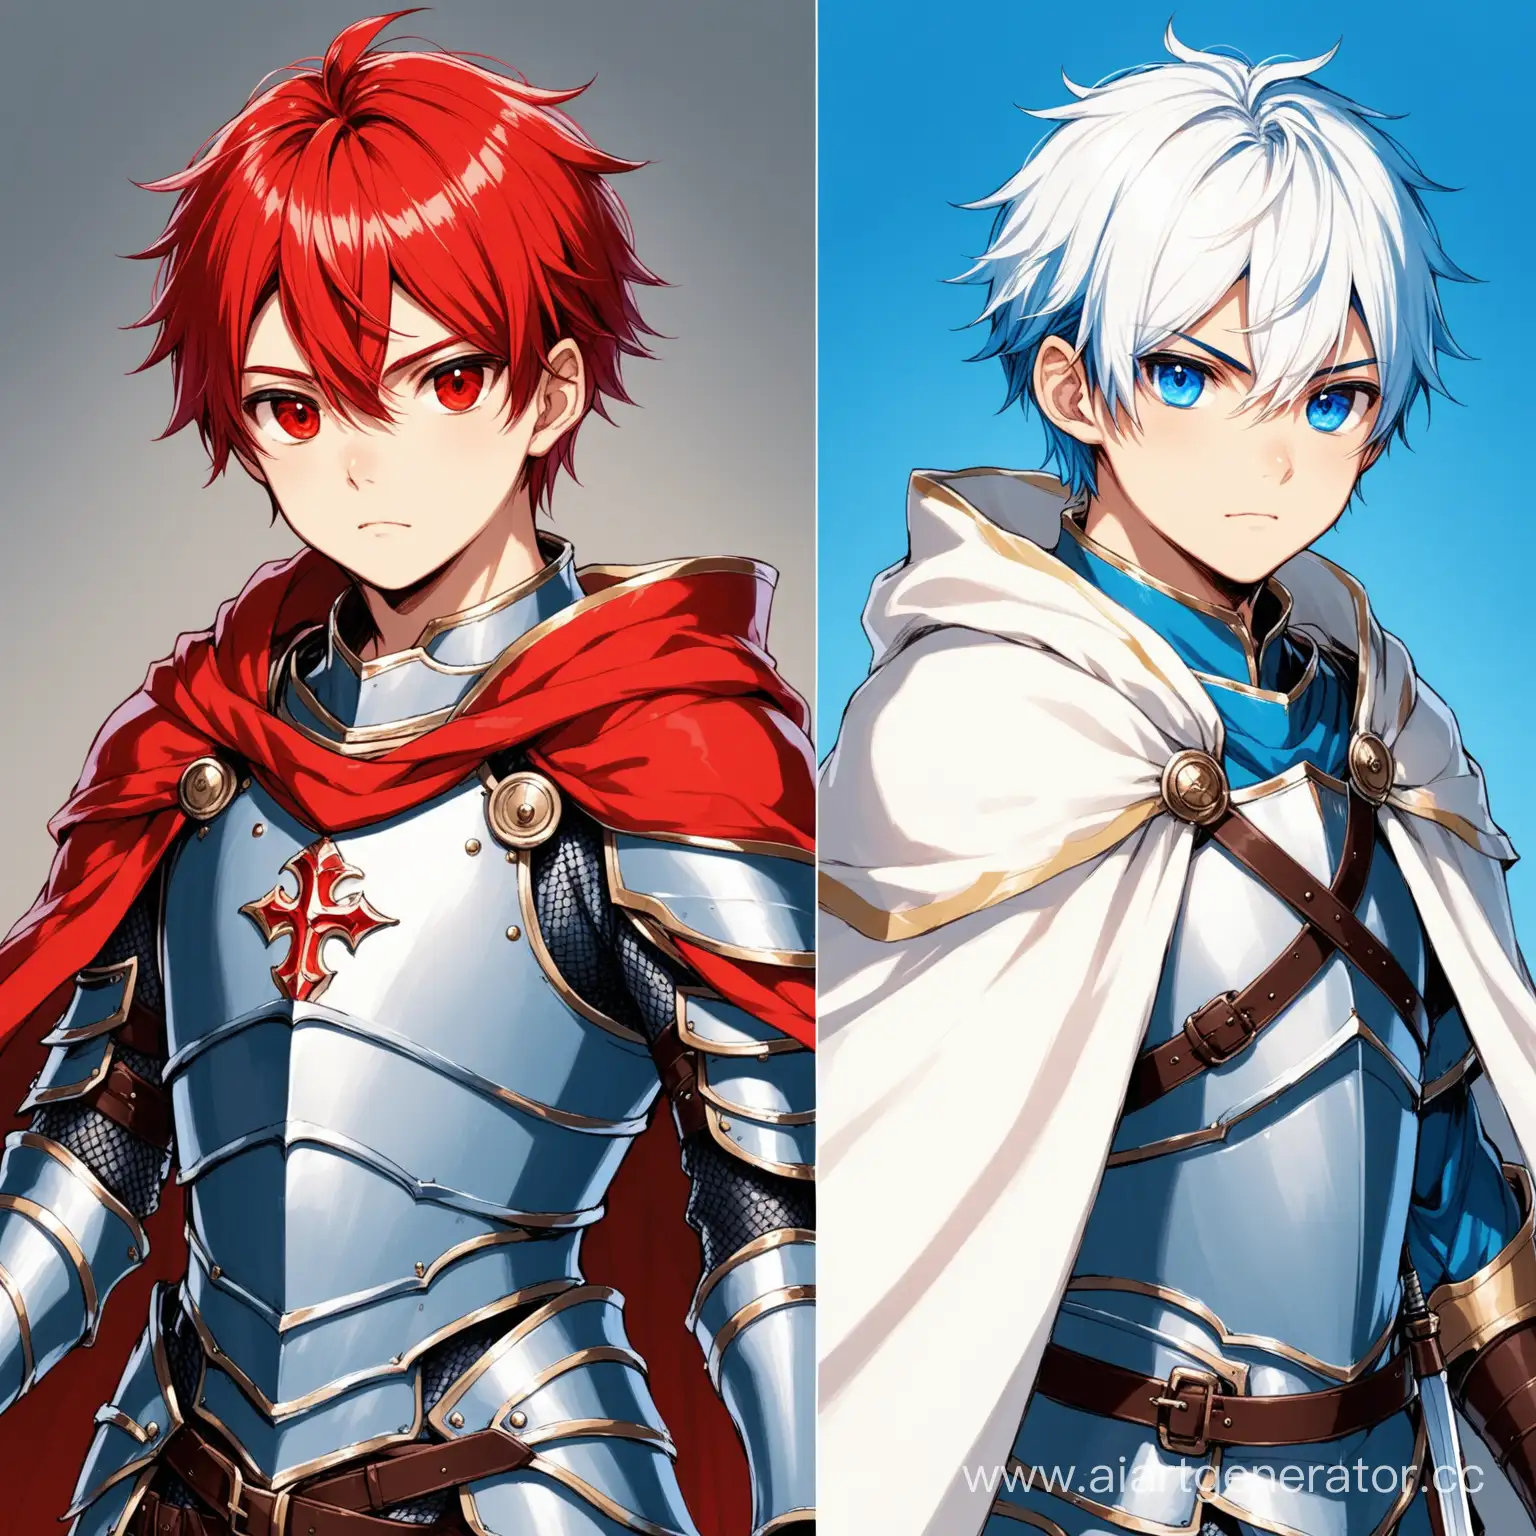 
Молодой 18-летний парень, разный цвет глаз (левый синий, правый красный) и белыми волосами, одетый в доспех и белый плащ, в руке двуручным меч.